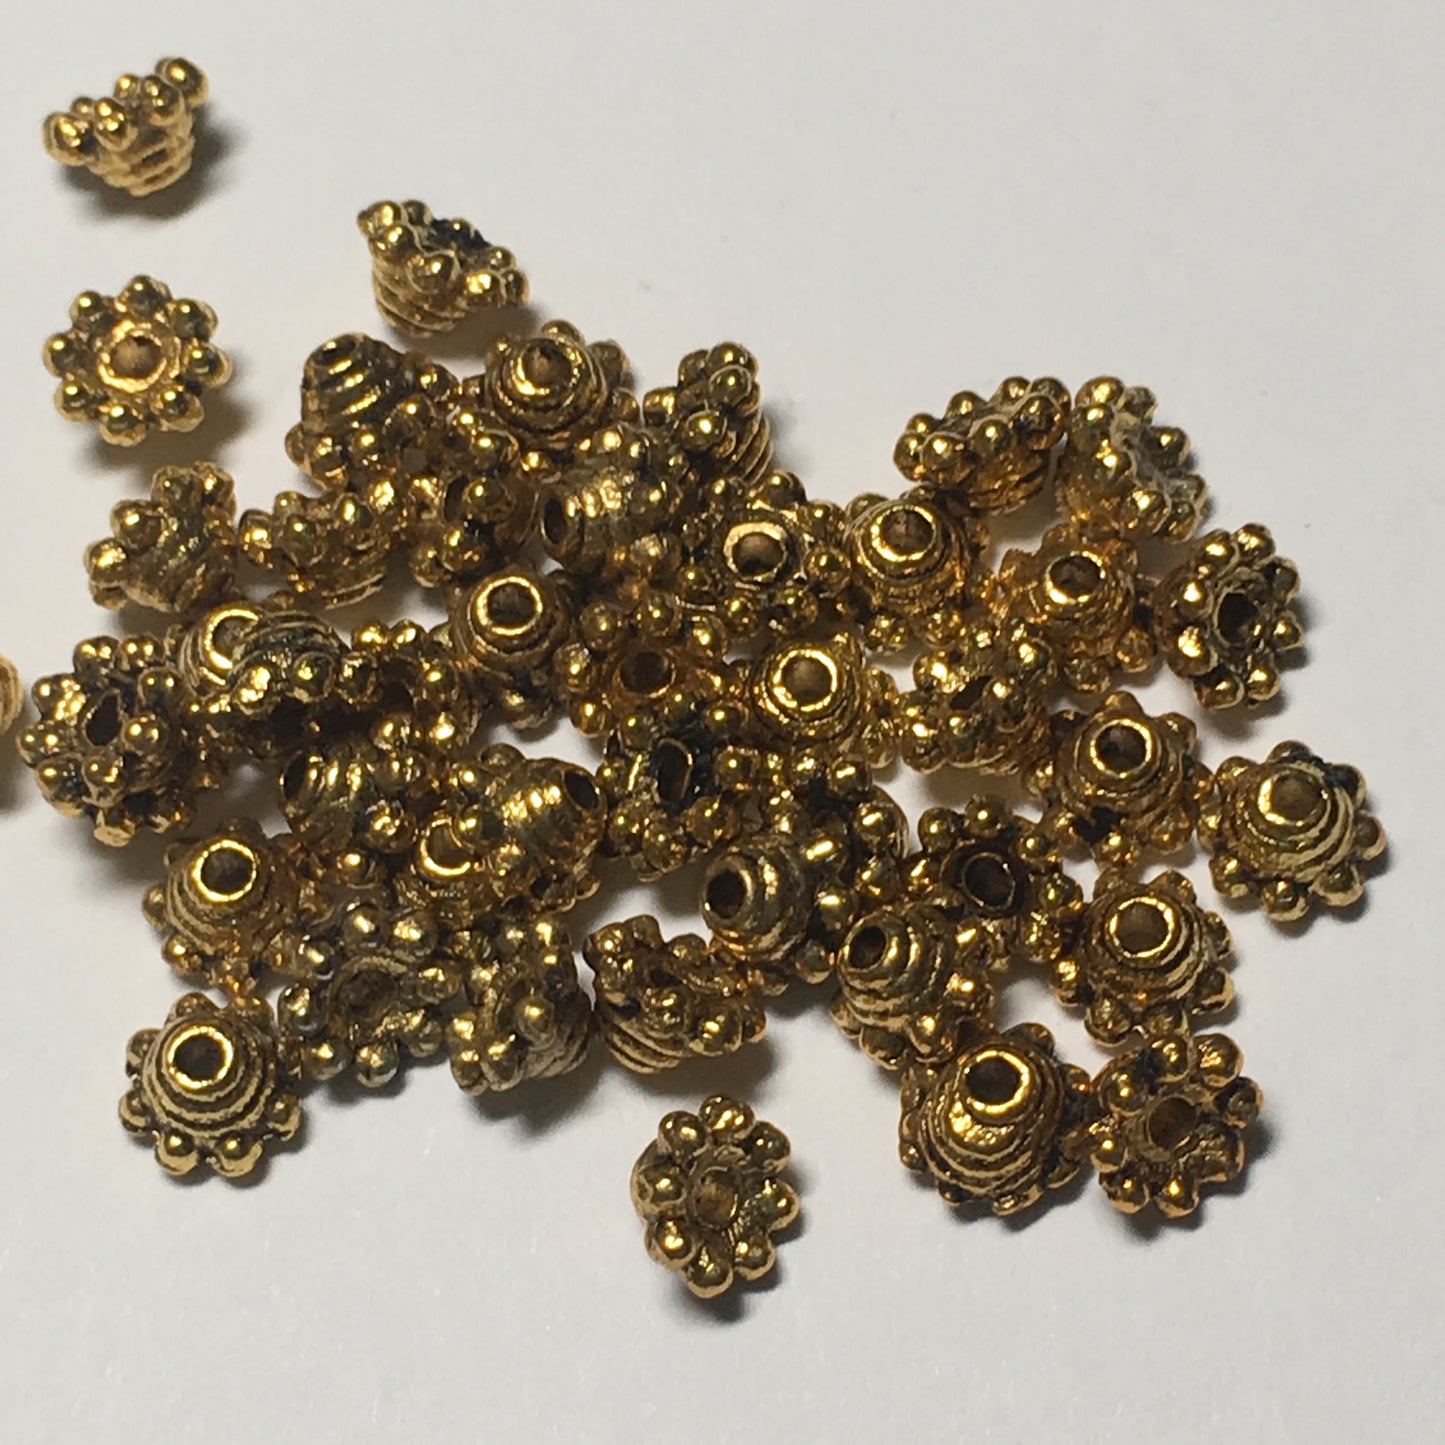 Antique Gold Bead Caps, 5 x 3 mm - 10 Caps